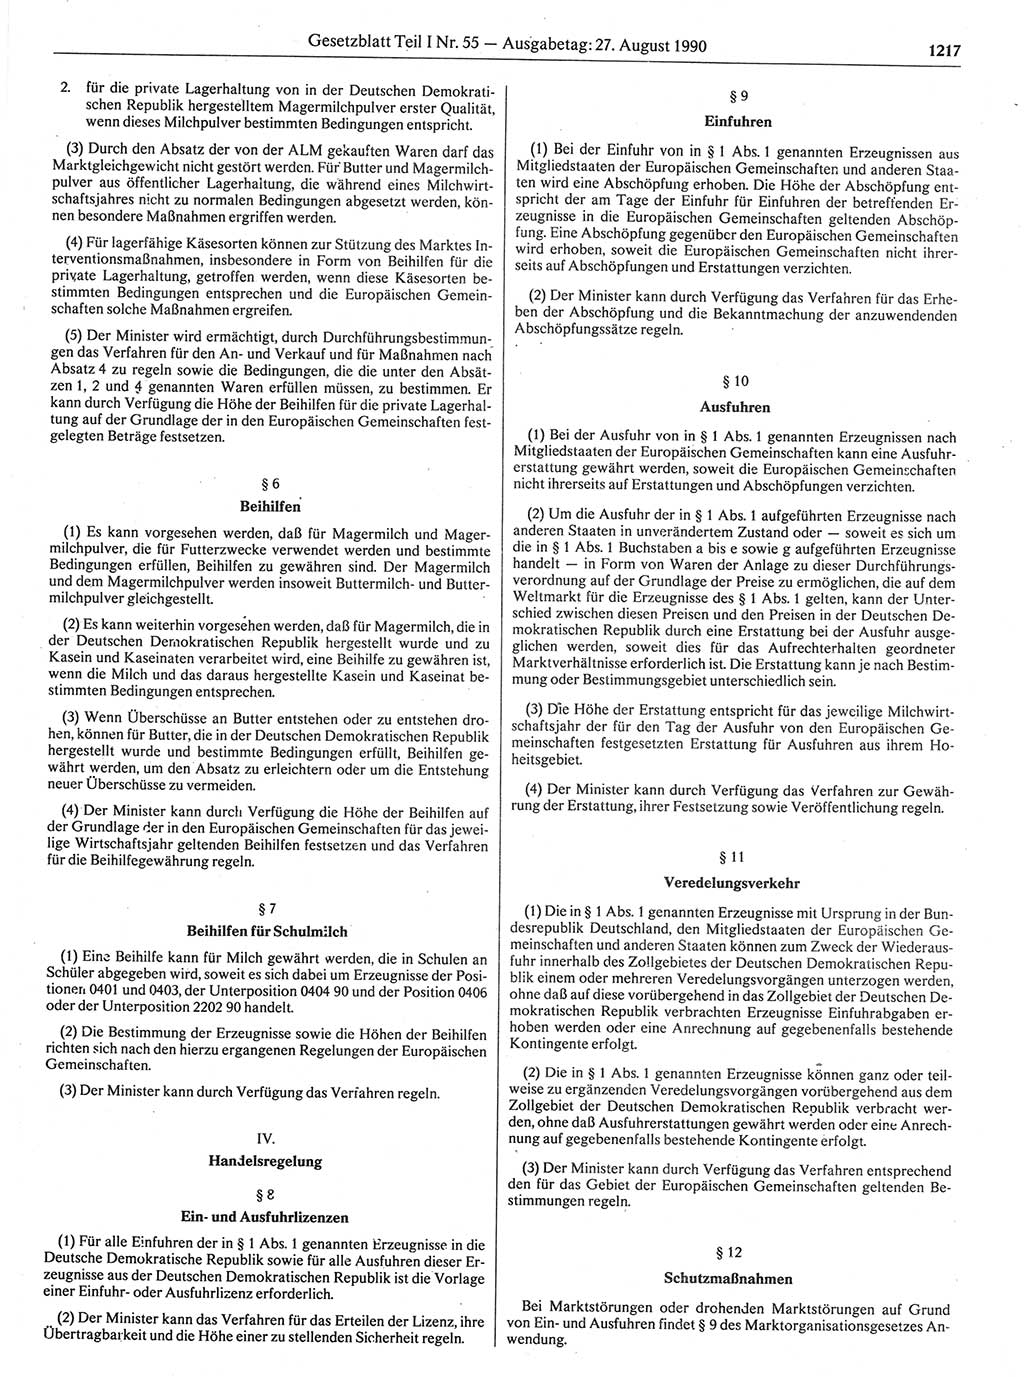 Gesetzblatt (GBl.) der Deutschen Demokratischen Republik (DDR) Teil Ⅰ 1990, Seite 1217 (GBl. DDR Ⅰ 1990, S. 1217)